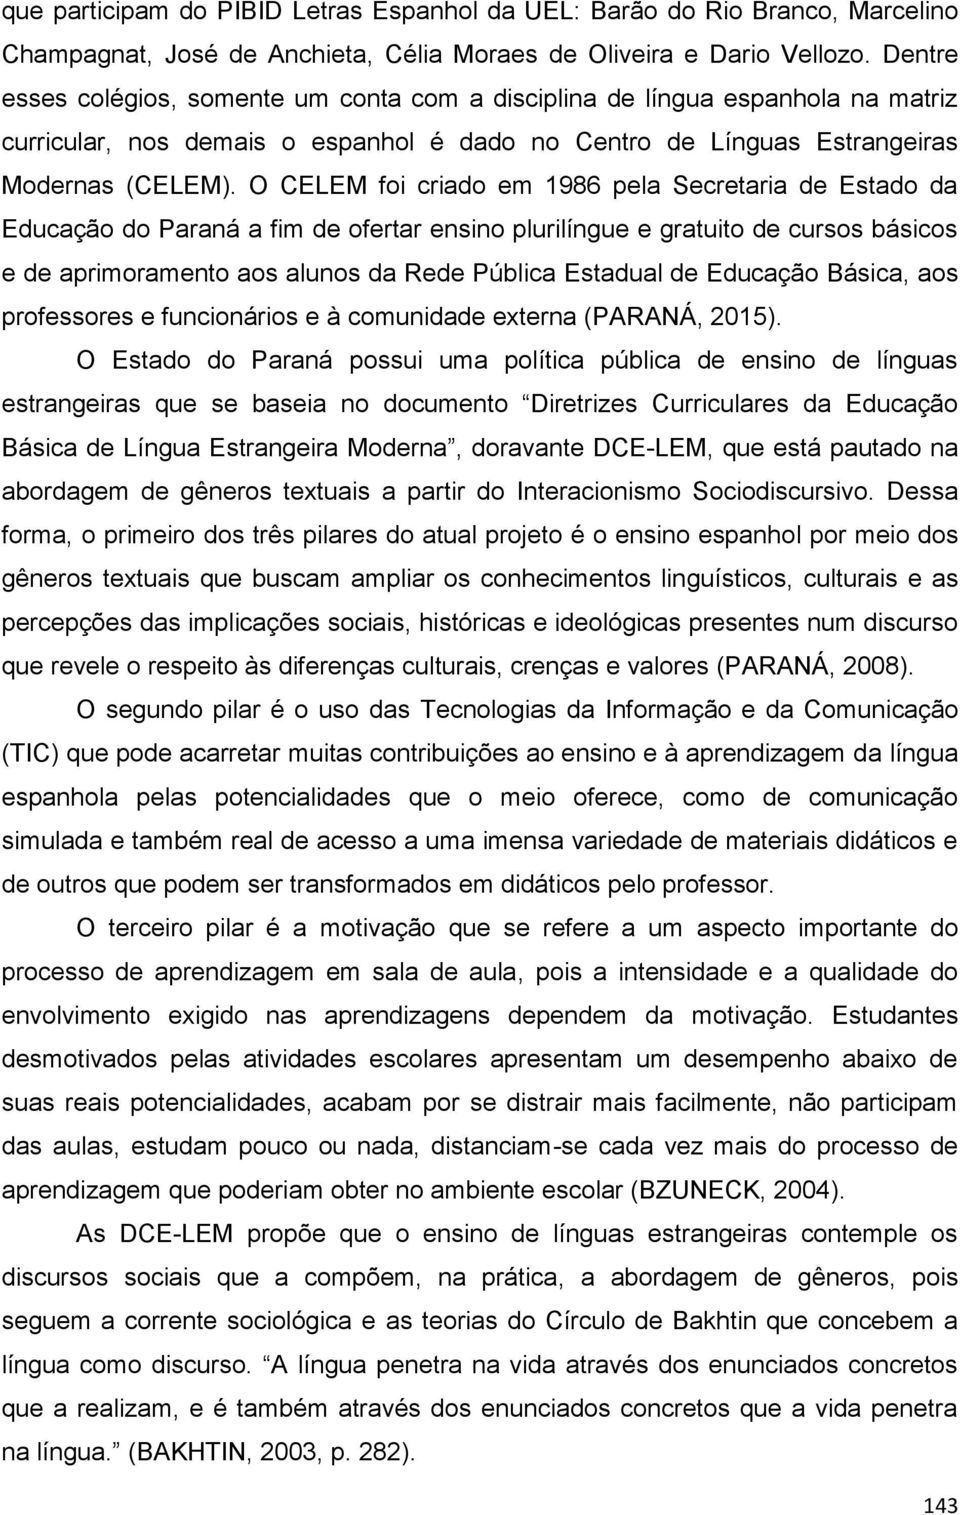 O CELEM foi criado em 1986 pela Secretaria de Estado da Educação do Paraná a fim de ofertar ensino plurilíngue e gratuito de cursos básicos e de aprimoramento aos alunos da Rede Pública Estadual de